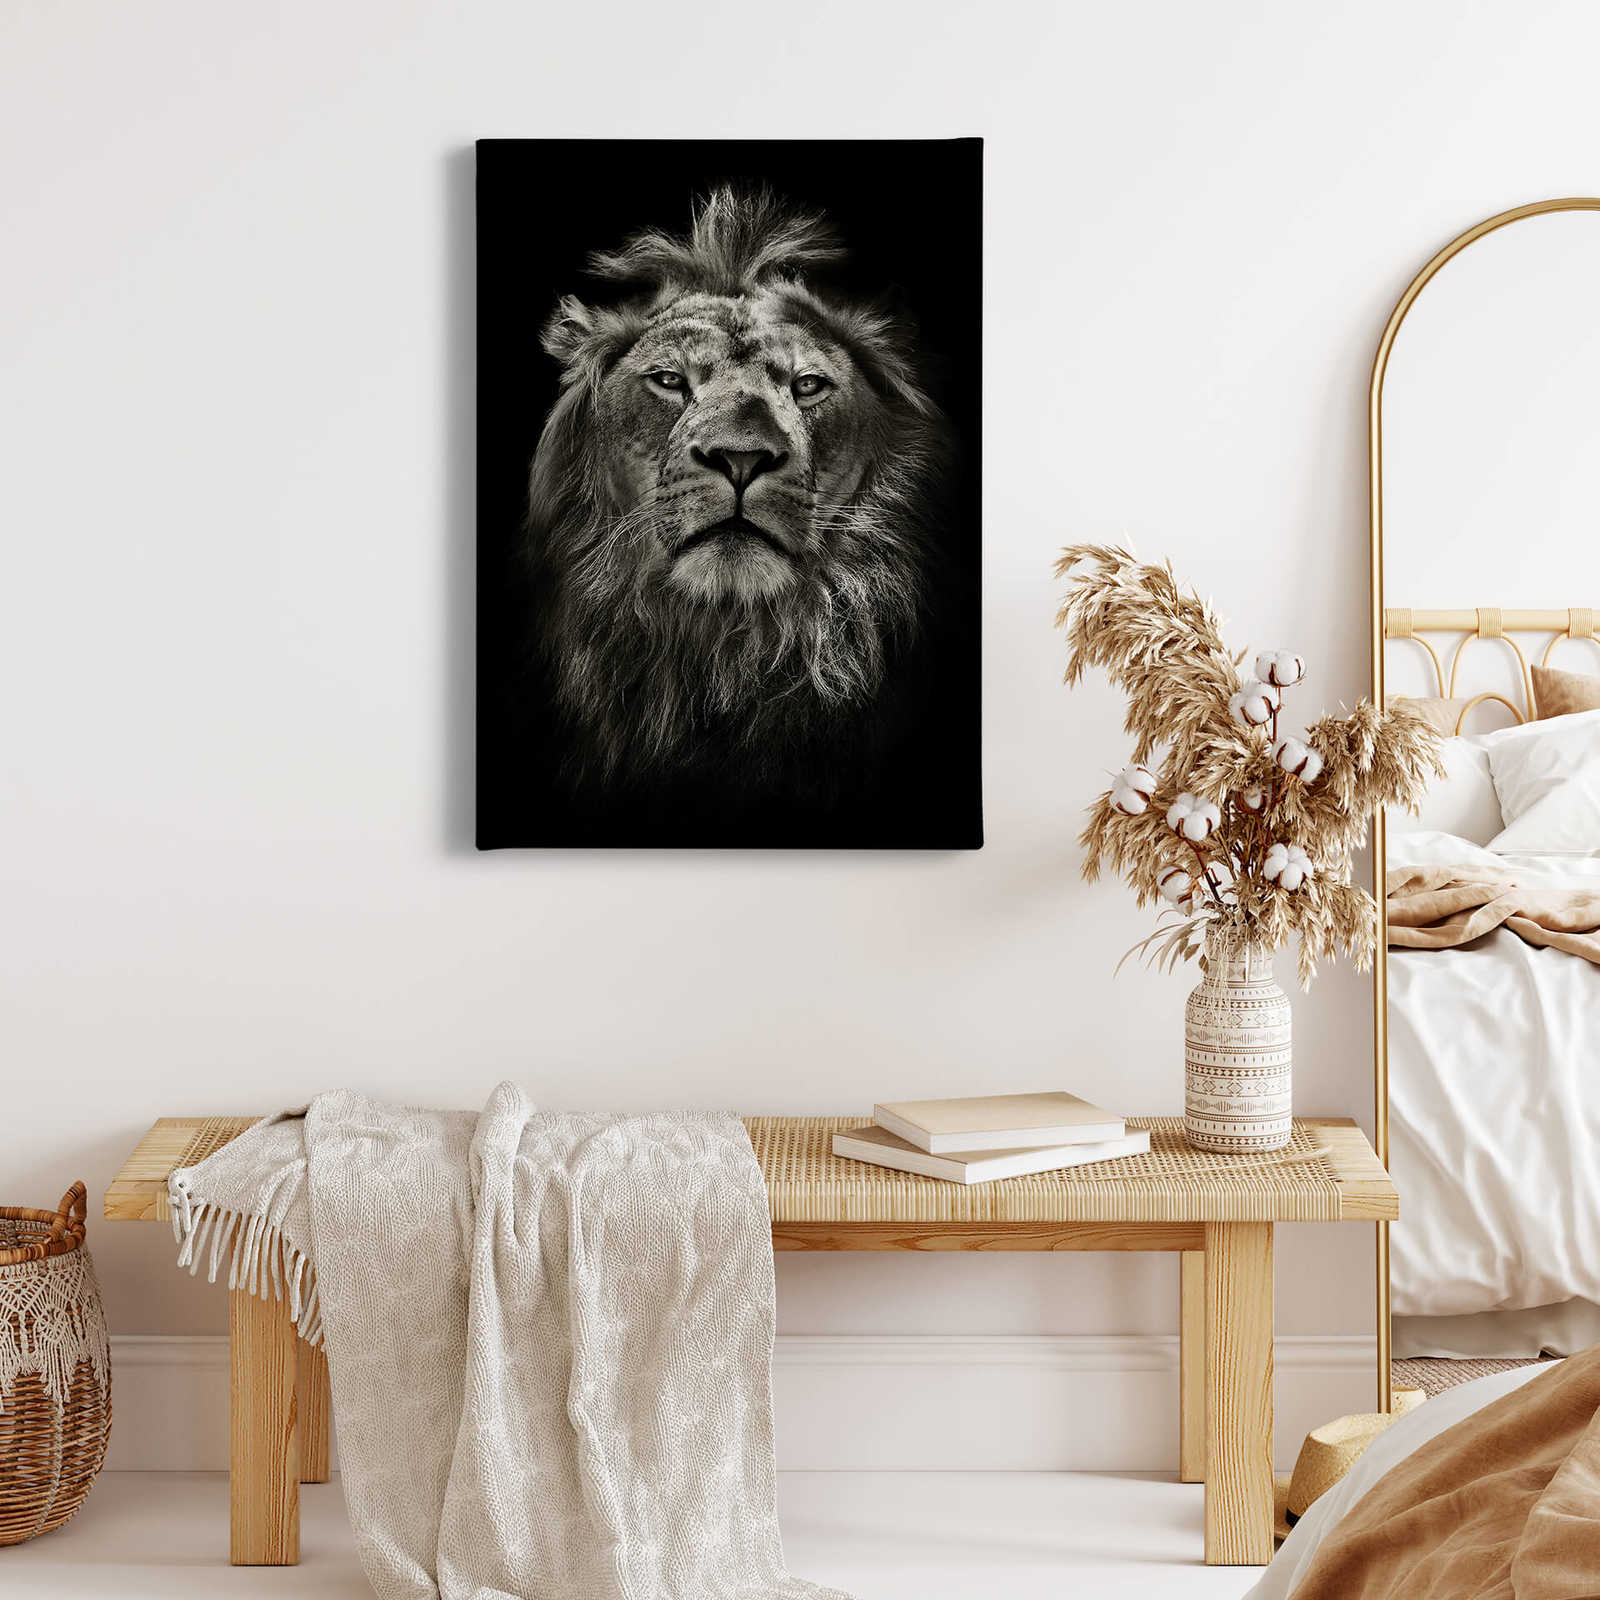             Toile Portrait de lion - 0,50 m x 0,70 m
        